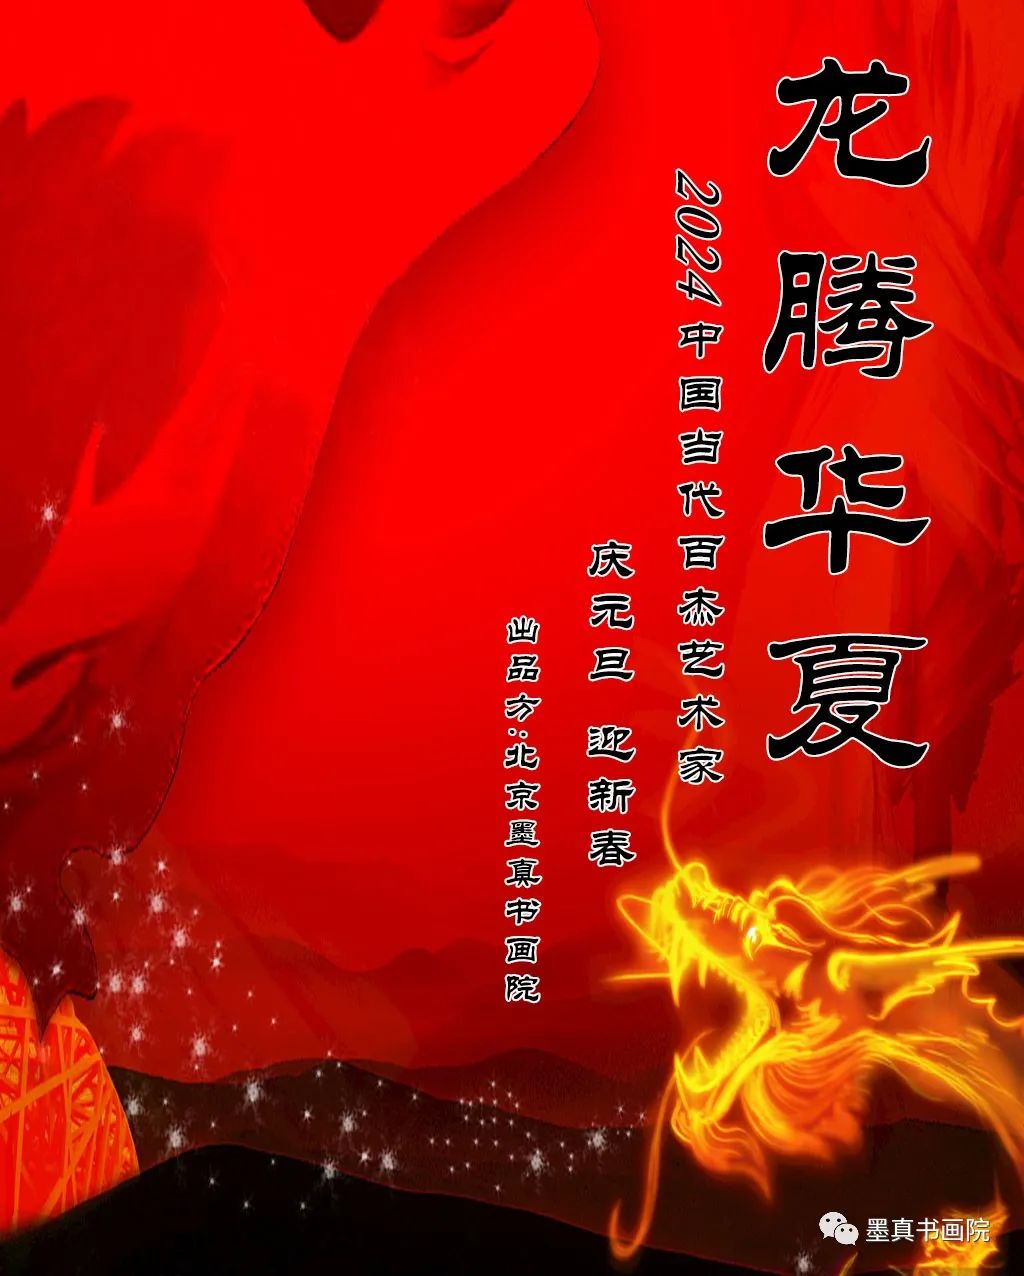 任惠中丨龙腾华夏——中国当代百杰艺术家庆元旦、迎新春